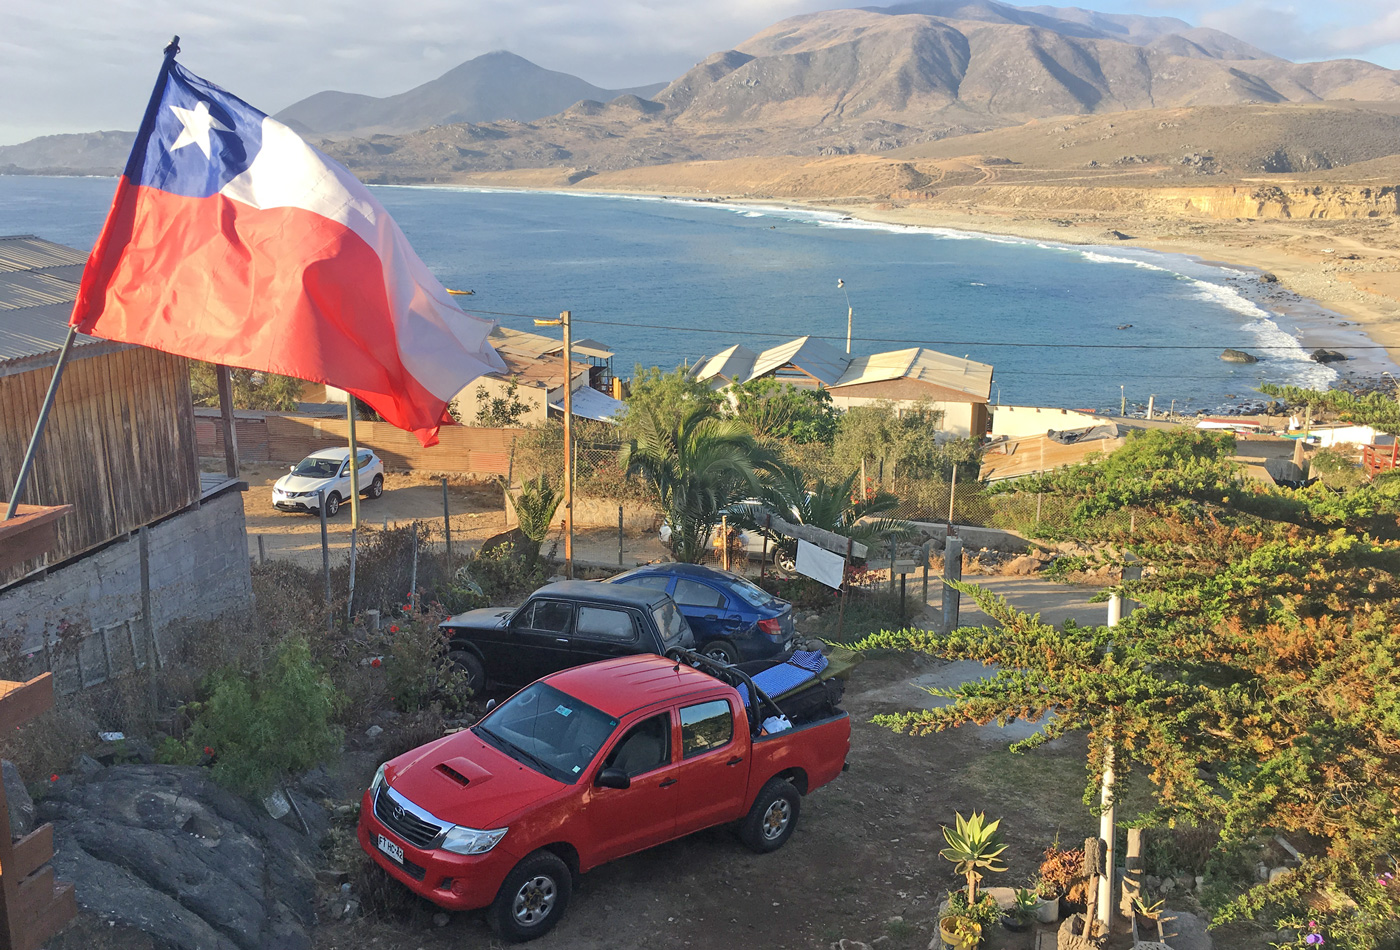 Dabujām arī citu auto – 4x4 Toyota Hilux pikapu un ātri nospraudām mērķi braukt tālāk, laimi meklēt ziemeļu virzienā – Čīle – sērfošana – kaitsērfings